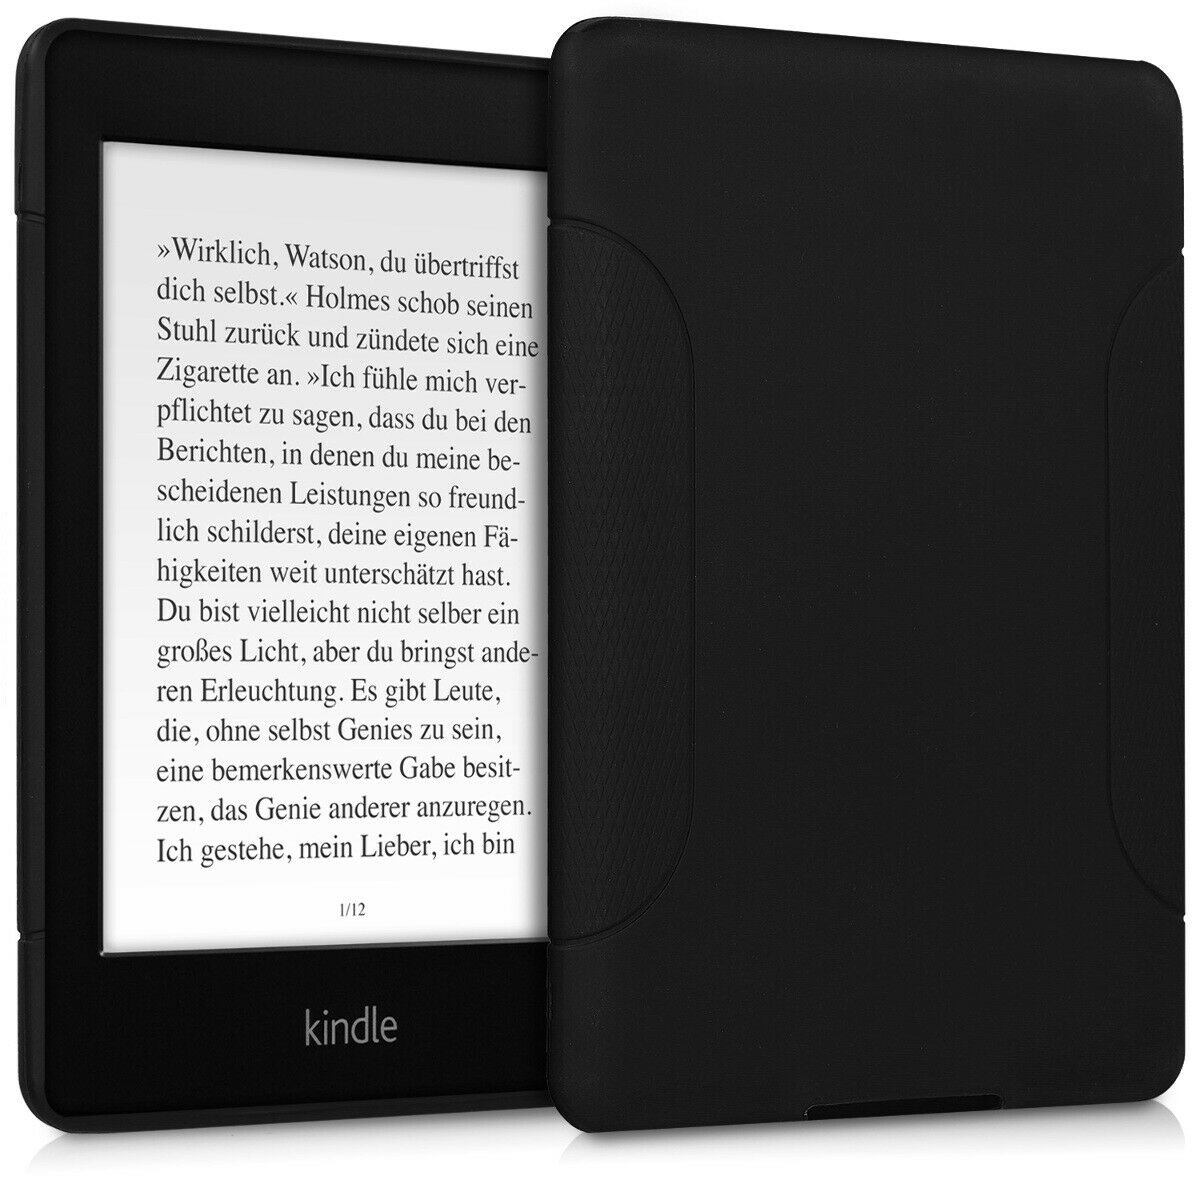 Pouzdro GEL pro Amazon Kindle Paperwhite černé